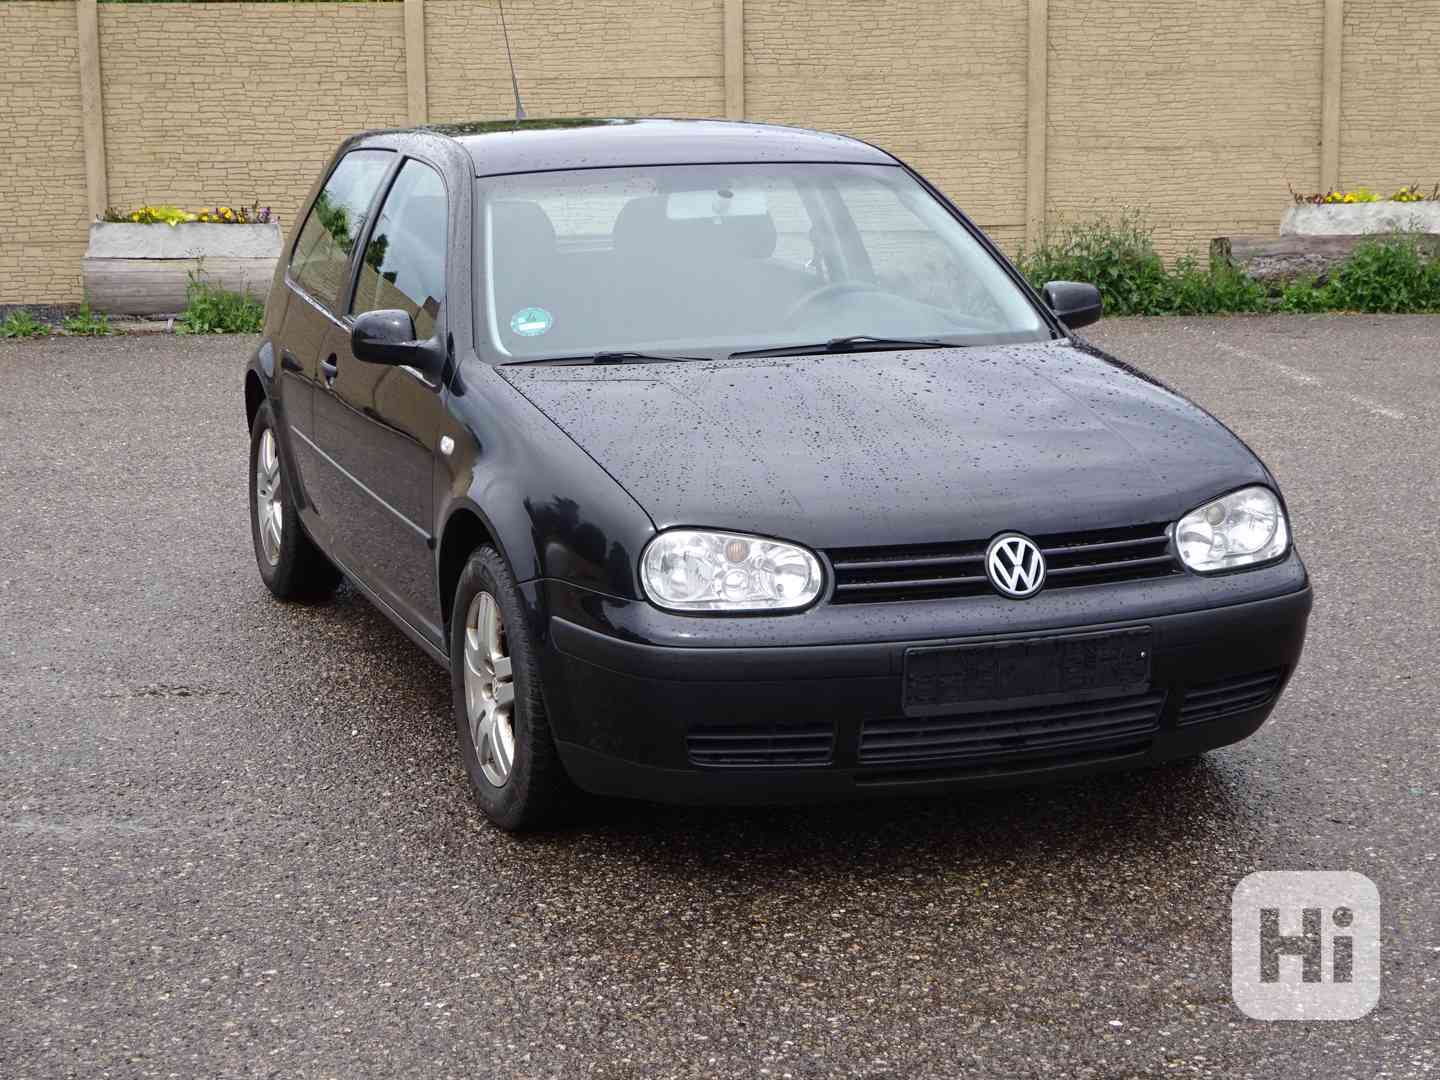 Volkswagen Golf, 1.9 TDI r.v.2002 (74 KW) KLIMA - foto 1